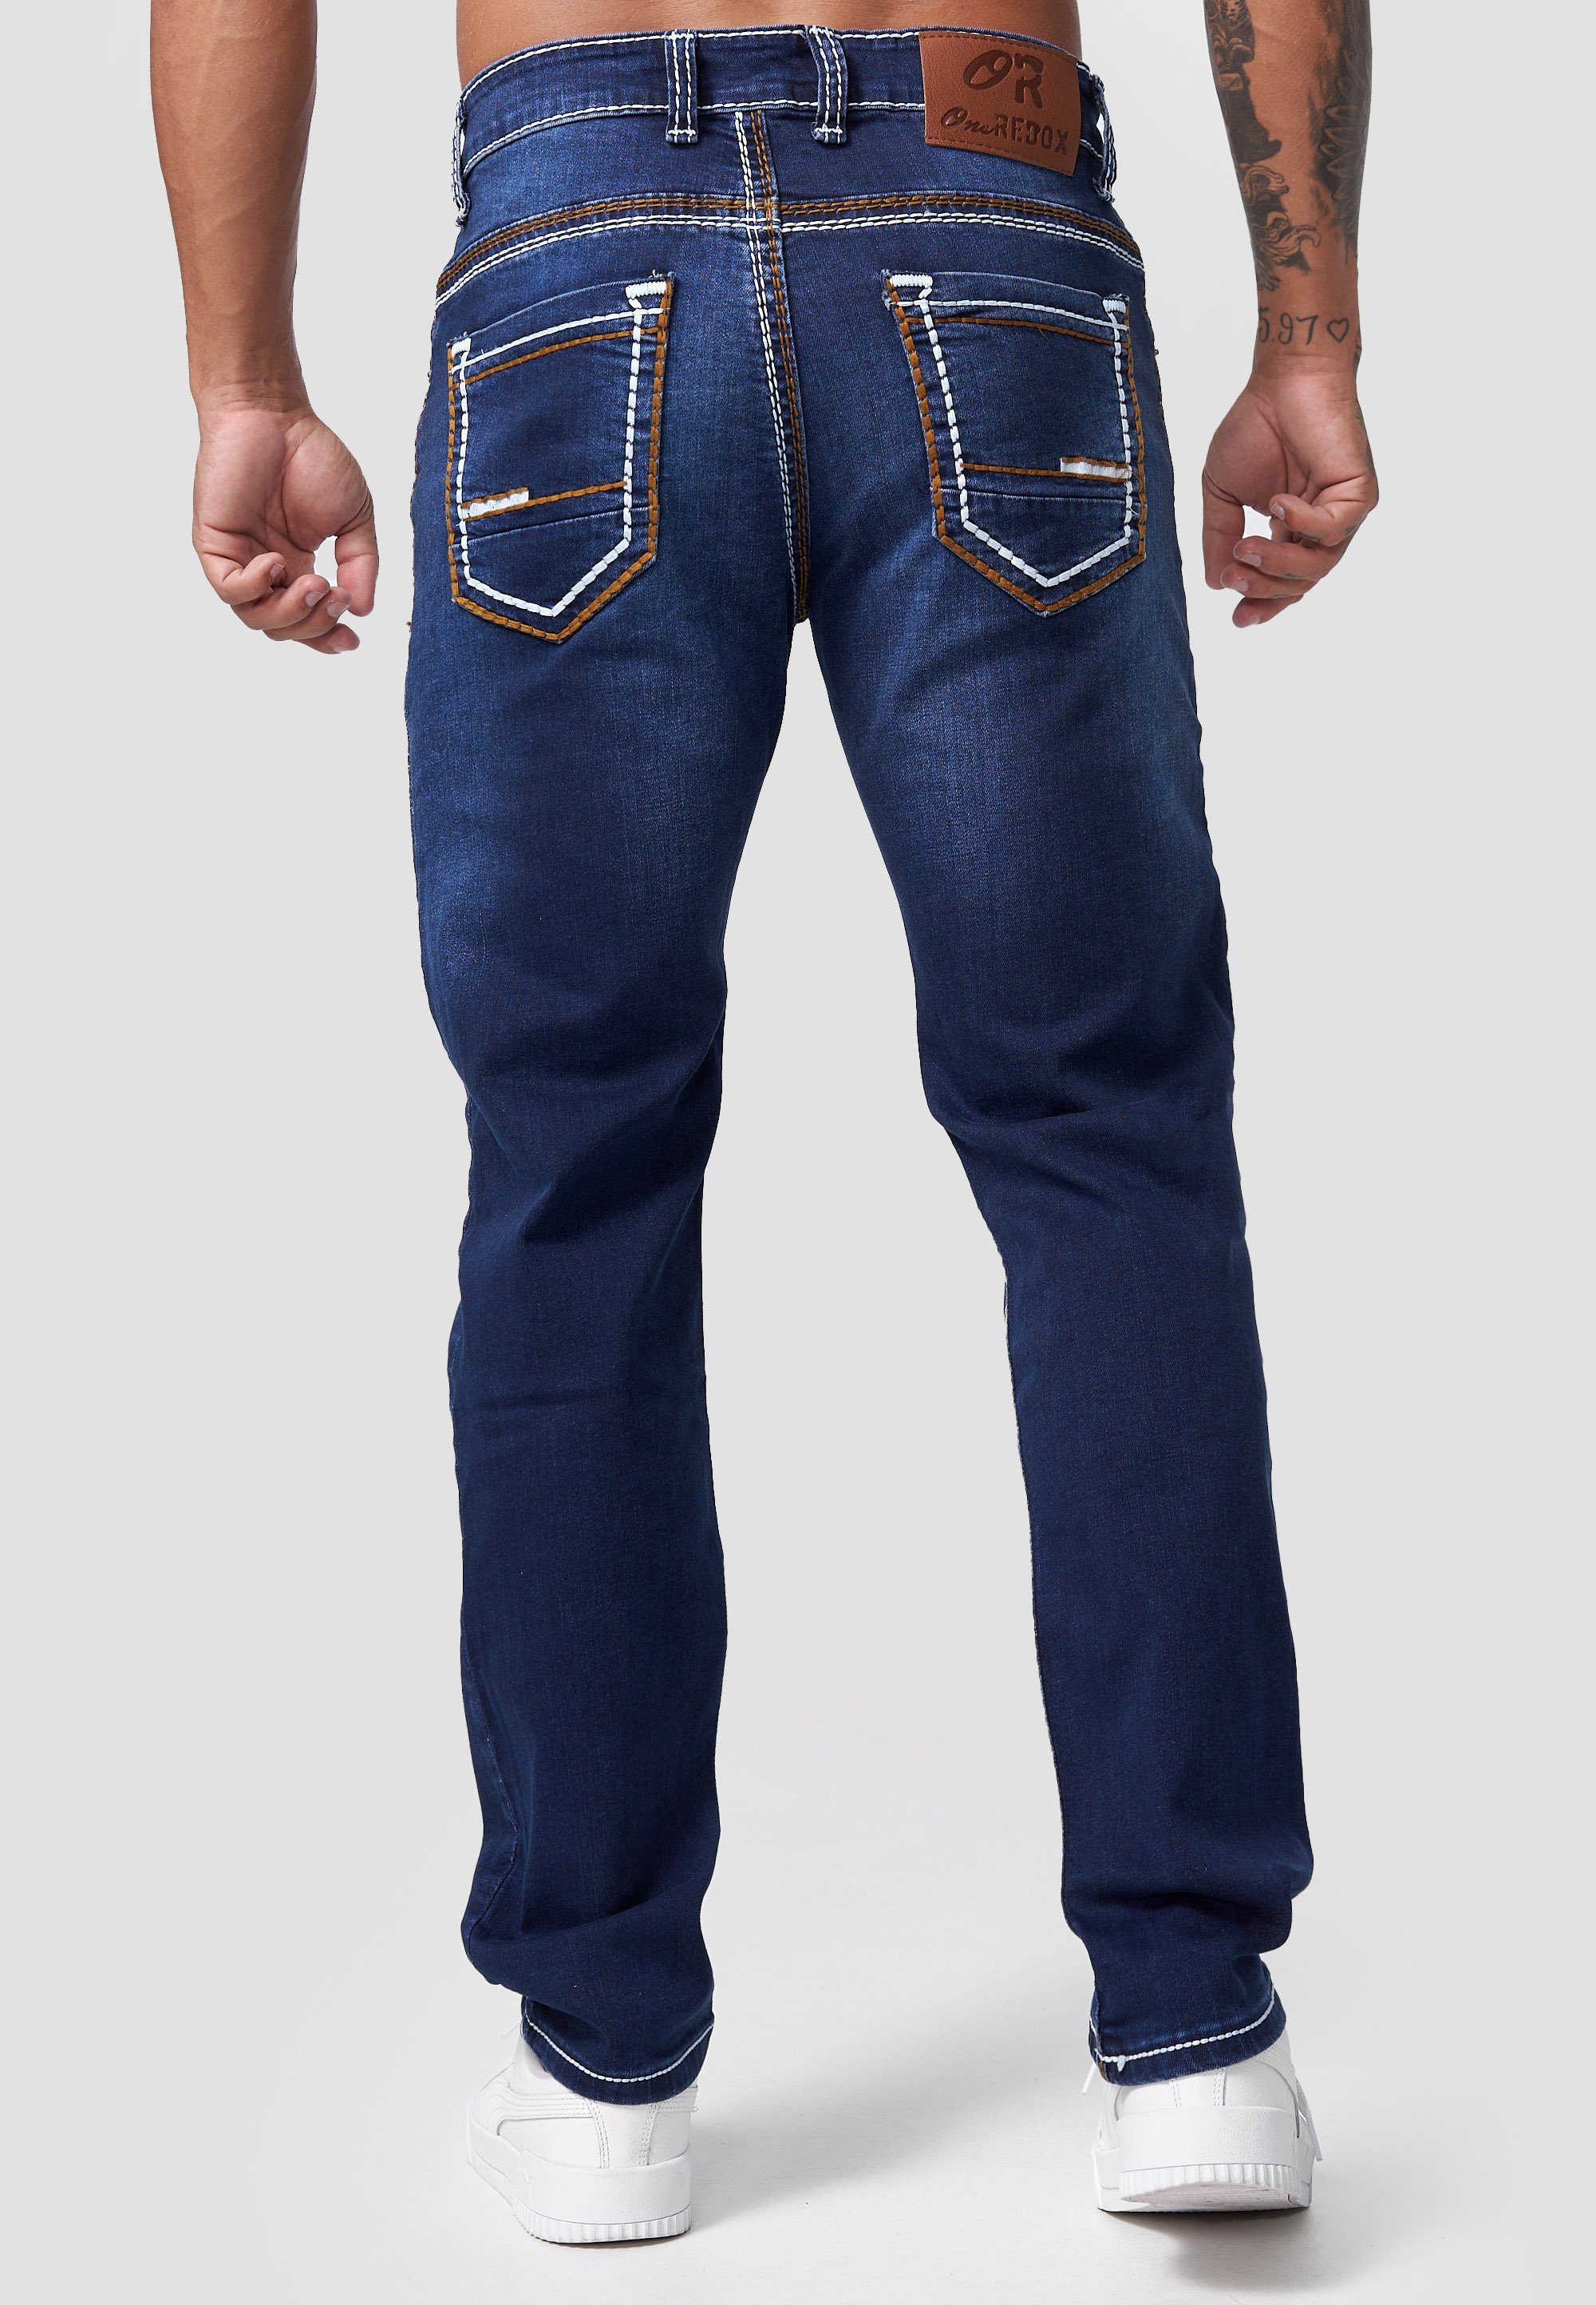 Männer Fit Hose Designerjeans Code47 Denim Herren Fit Slim Regular Jeans Regular-fit-Jeans